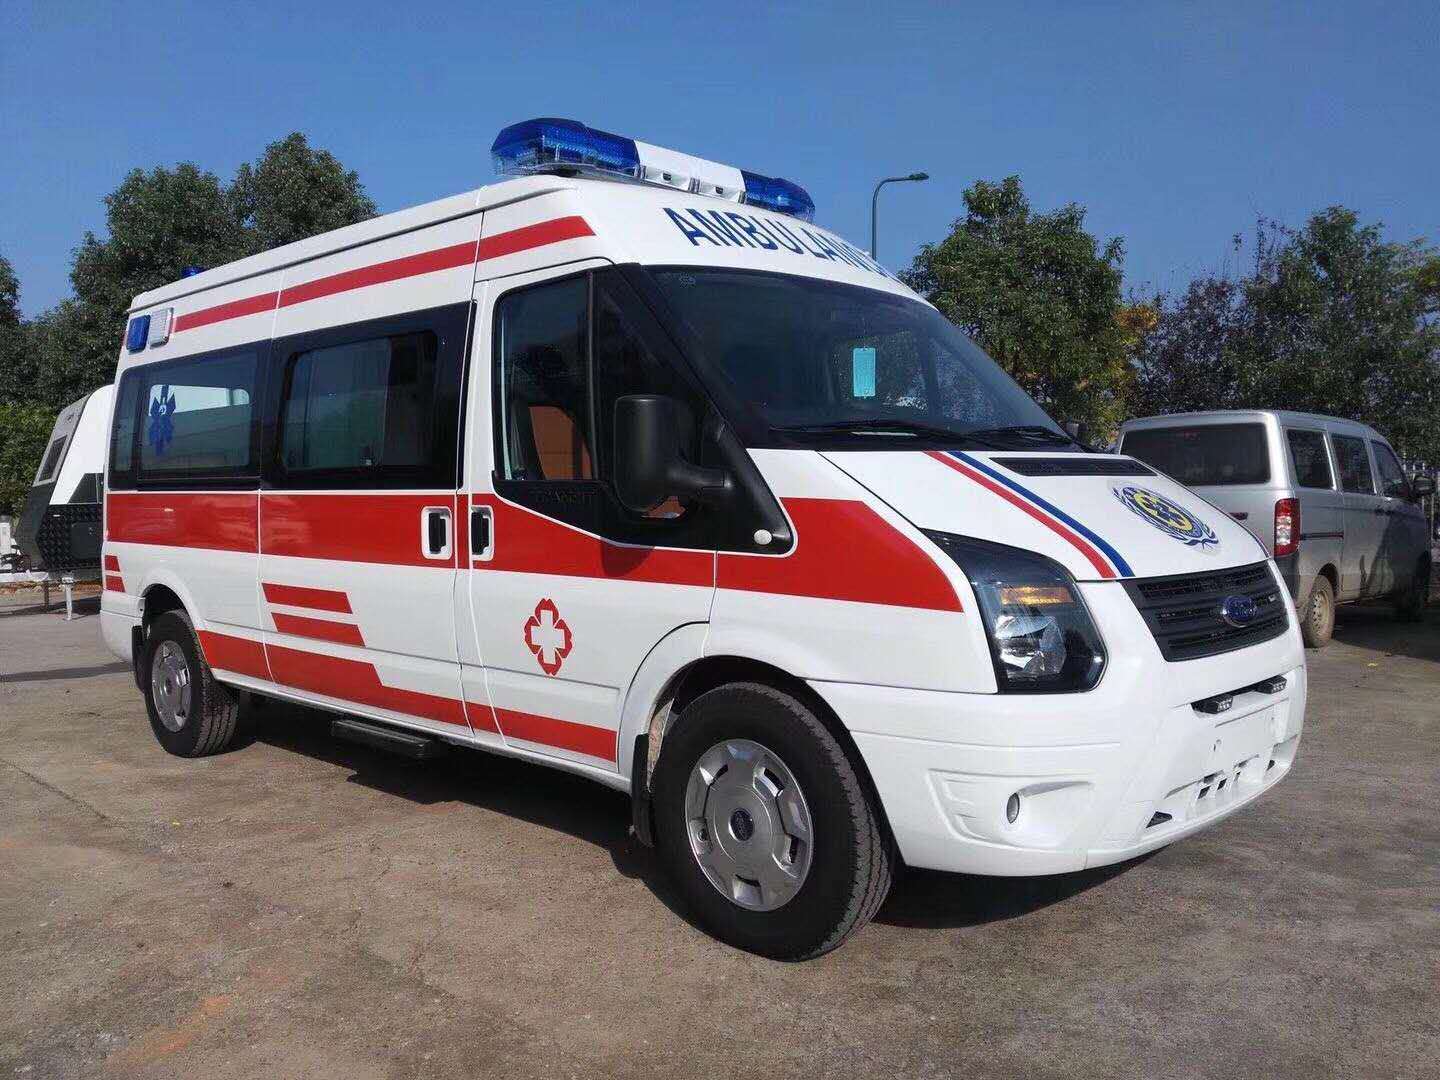 儋州市福特新时代V348救护车报价_救护车图片